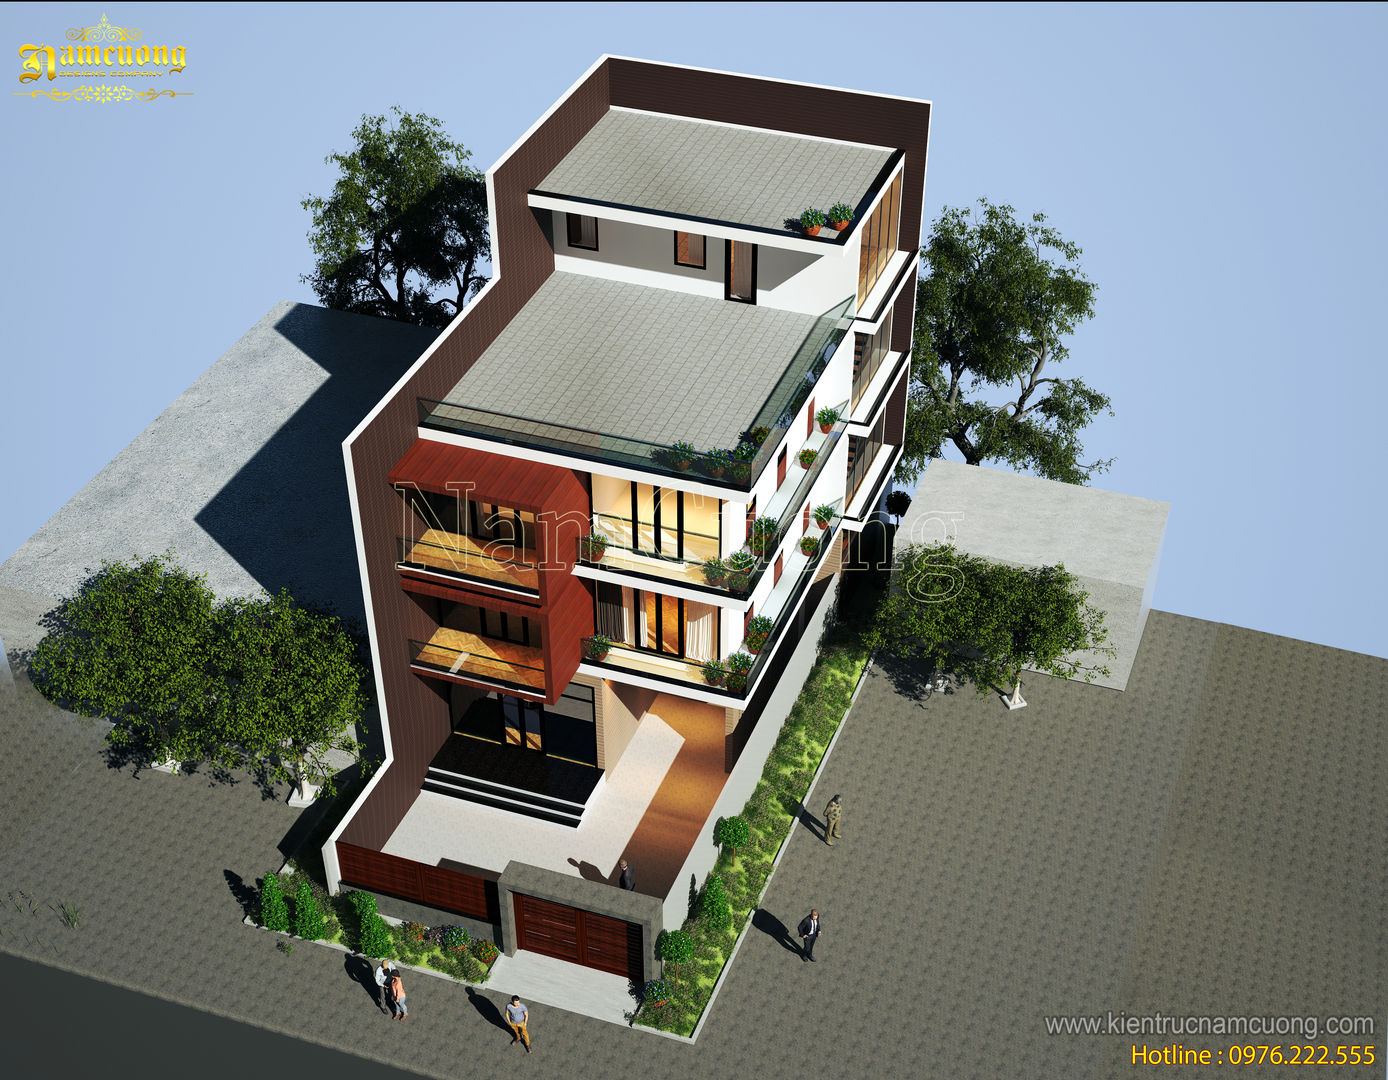 NamCuong design company, Công ty Cổ phần tư vấn thiết kế xây dựng Nam Cường Công ty Cổ phần tư vấn thiết kế xây dựng Nam Cường Modern houses